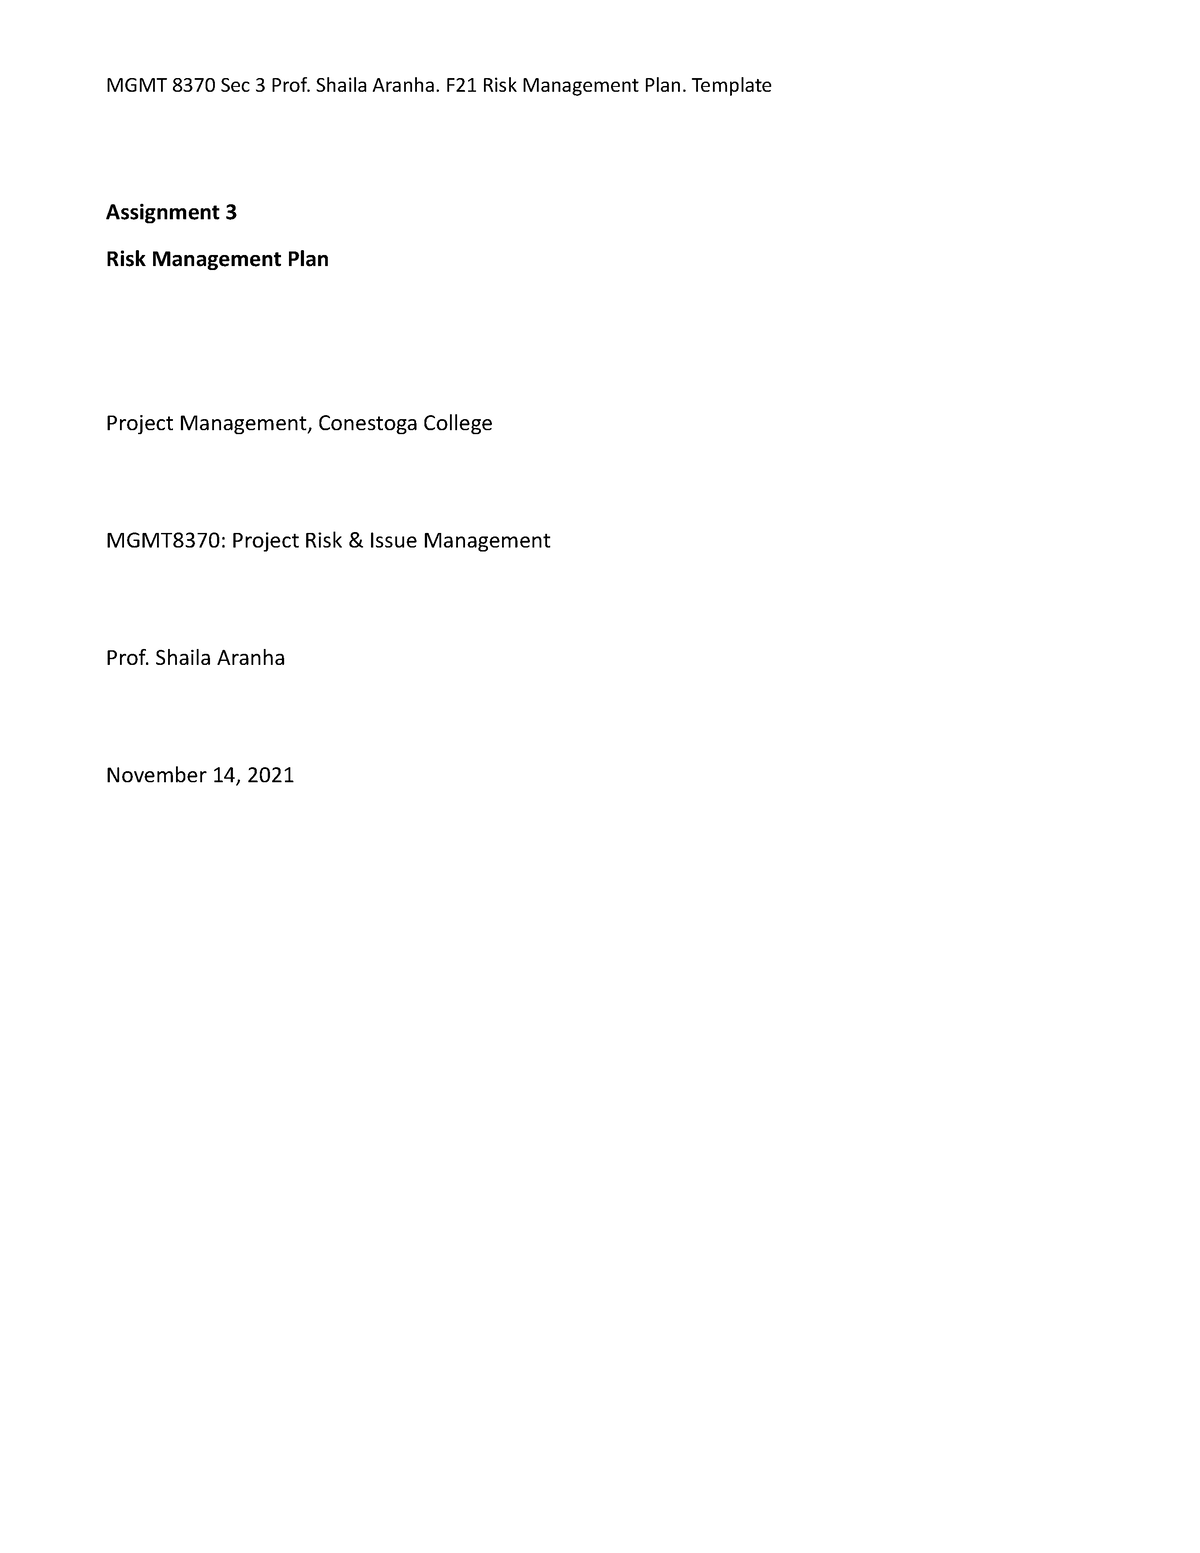 assignment 3 risk management plan